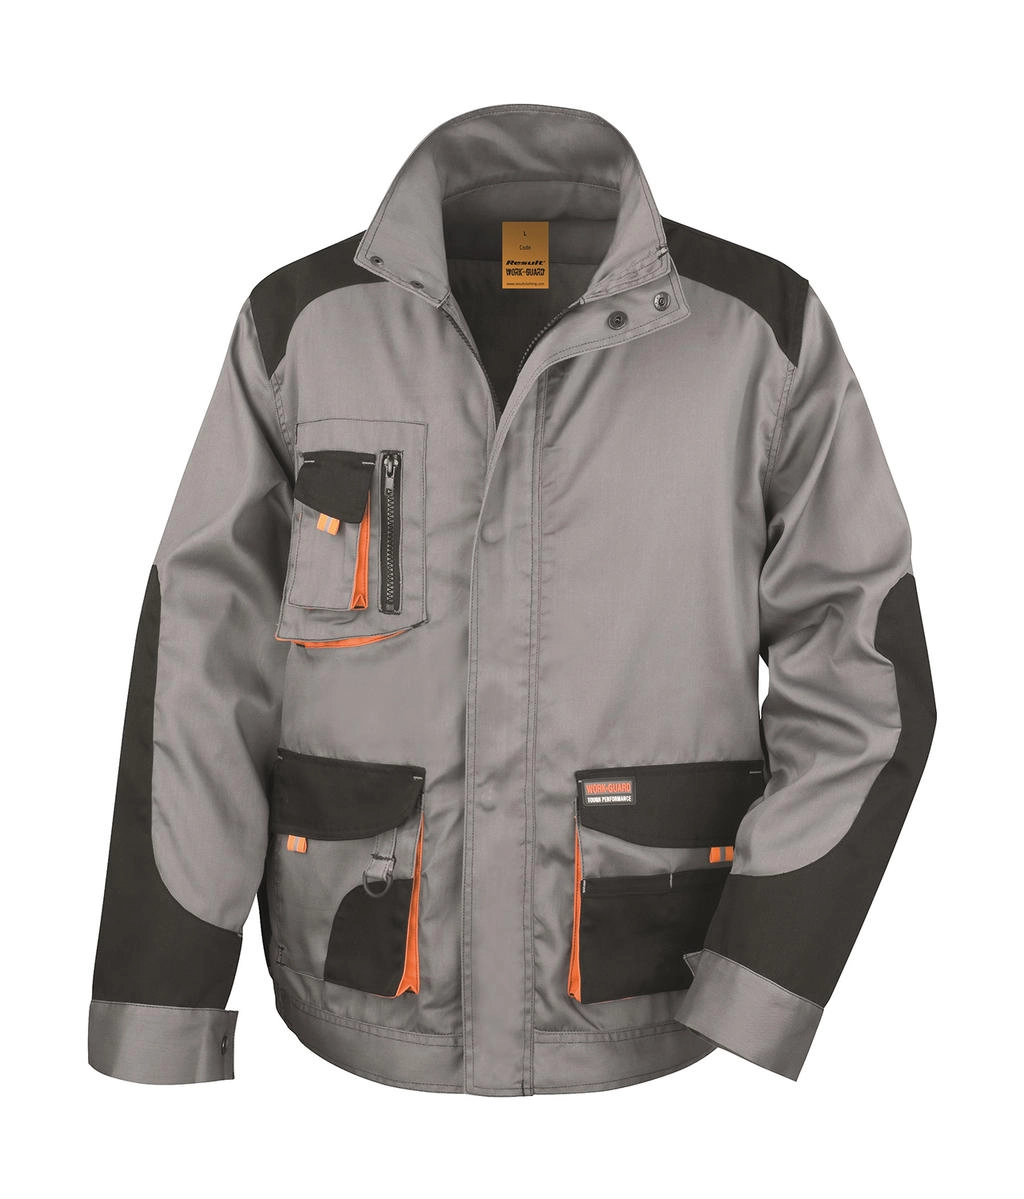 LITE Jacket zum Besticken und Bedrucken in der Farbe Grey/Black/Orange mit Ihren Logo, Schriftzug oder Motiv.